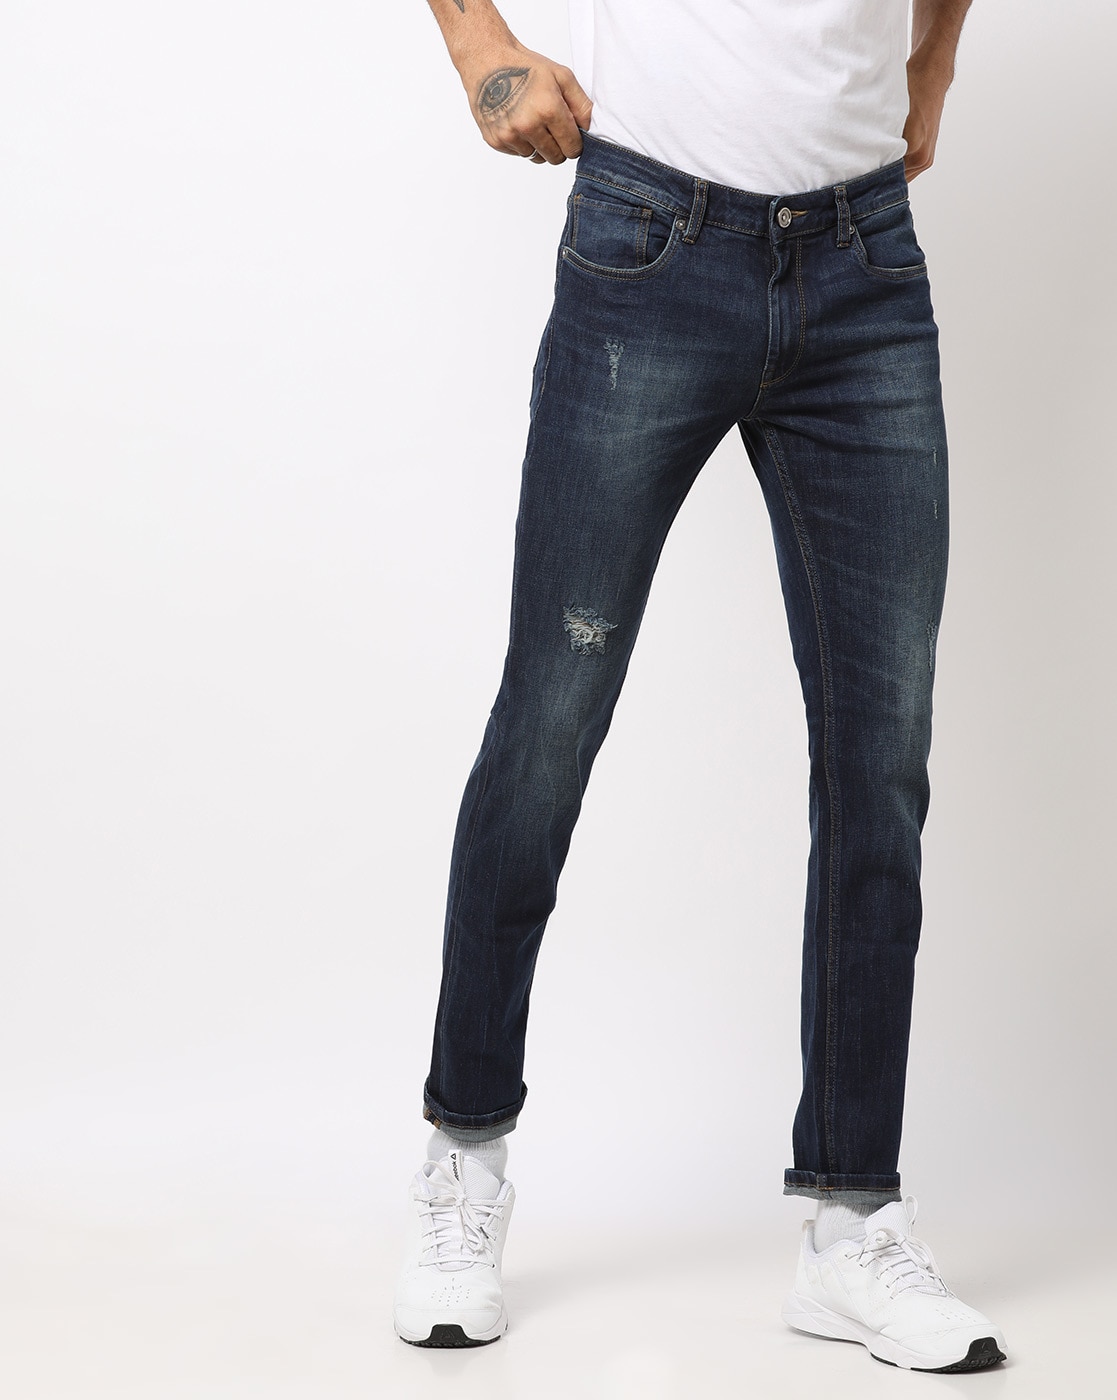 voi jeans online